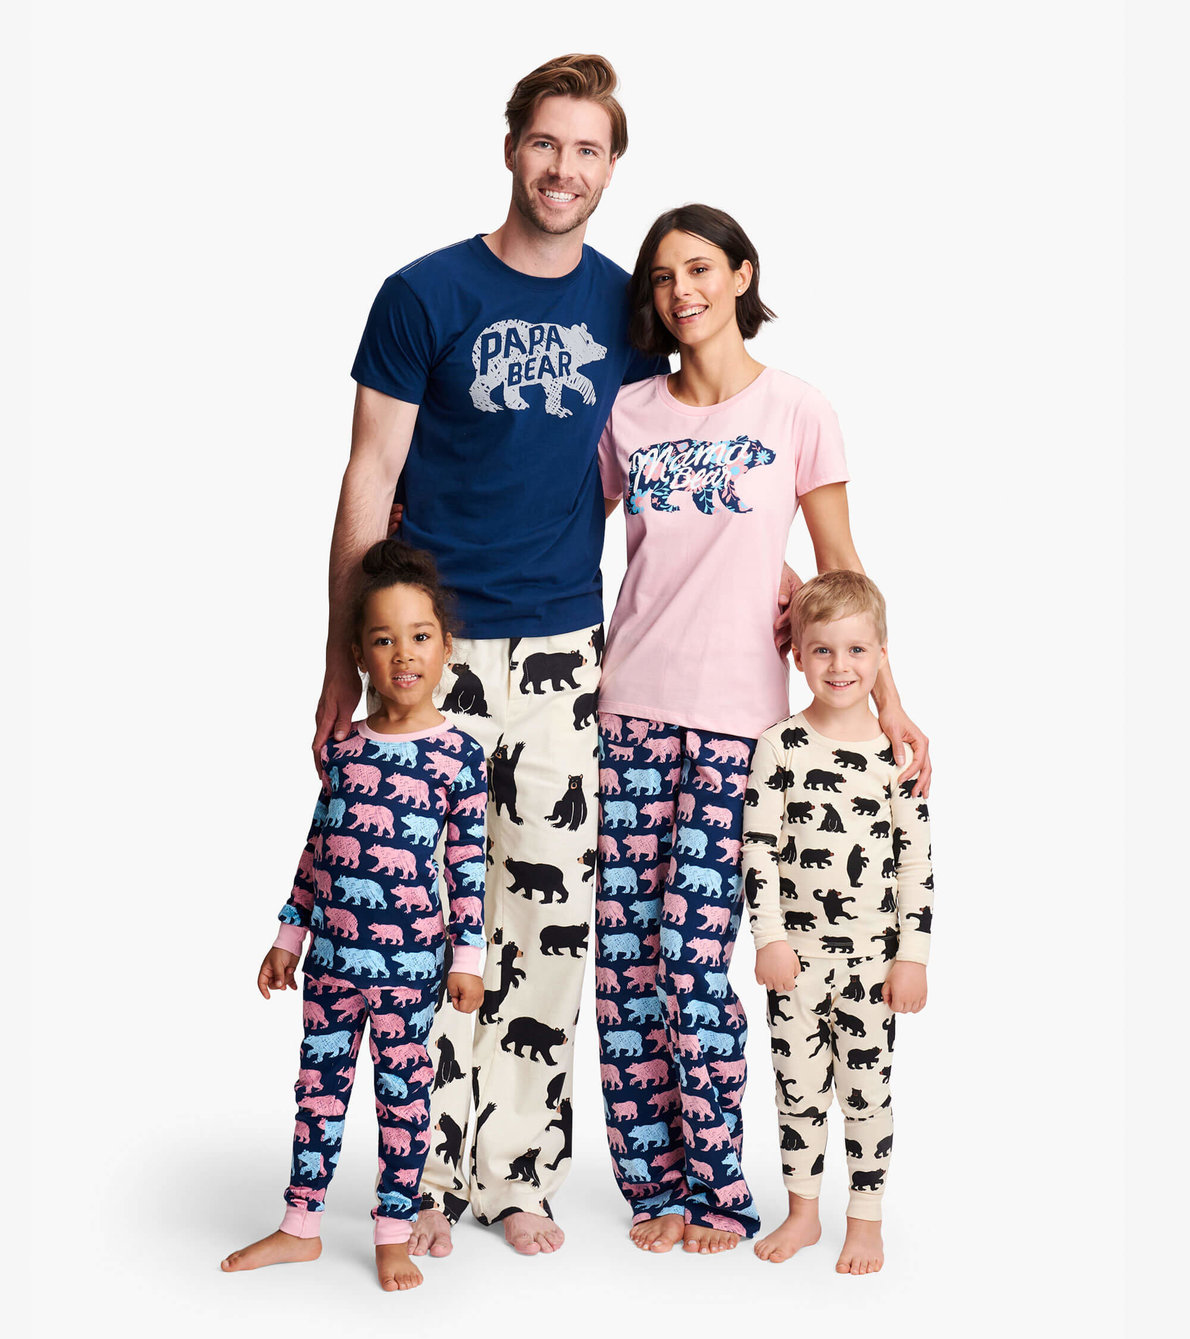 View larger image of Black Bears Kids Pajama Set